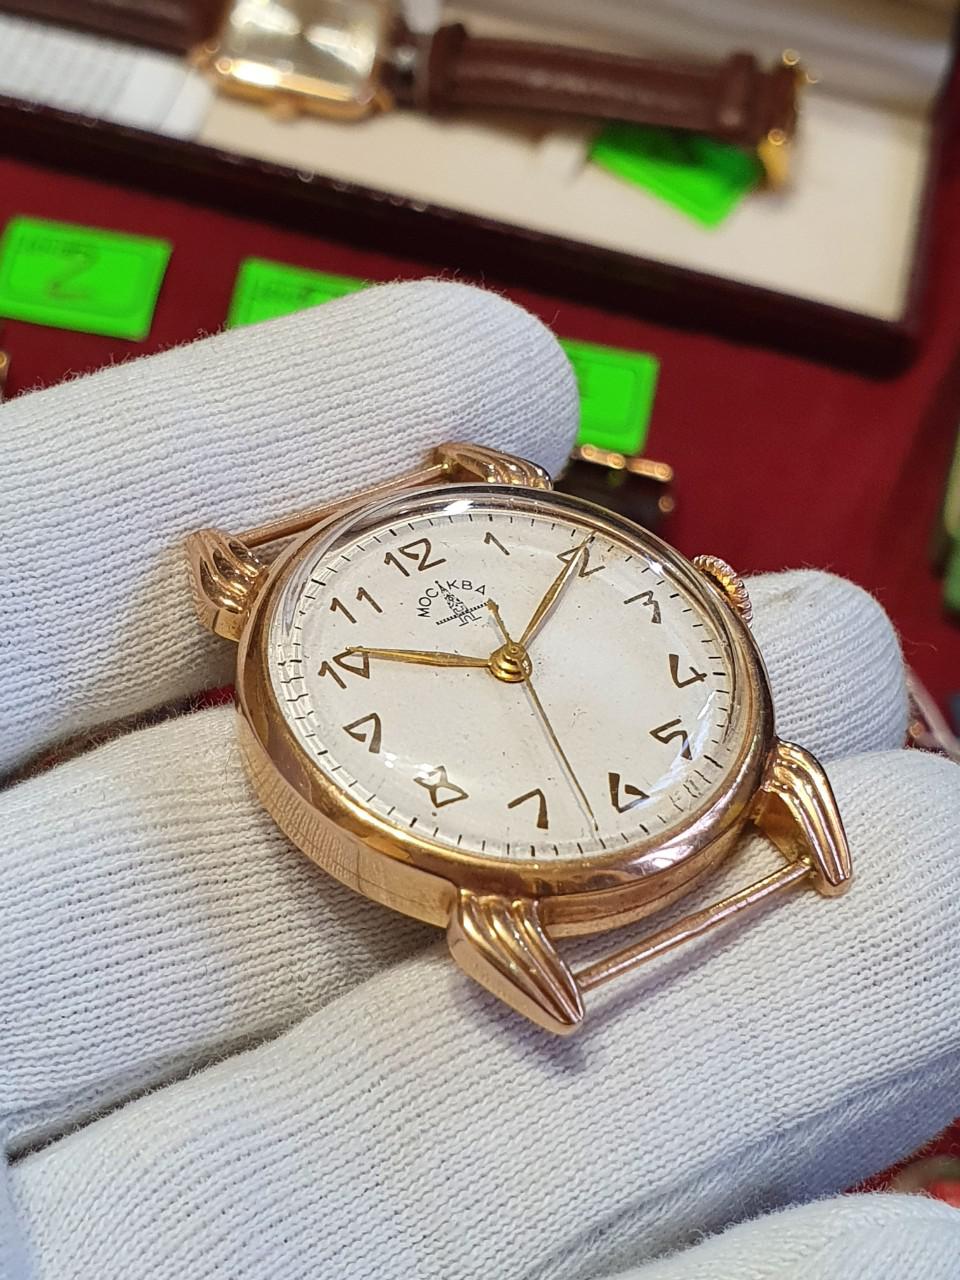 Đồng hồ Poljot Mockva 252ĐHC005 automatic vàng đúc nguyên khối